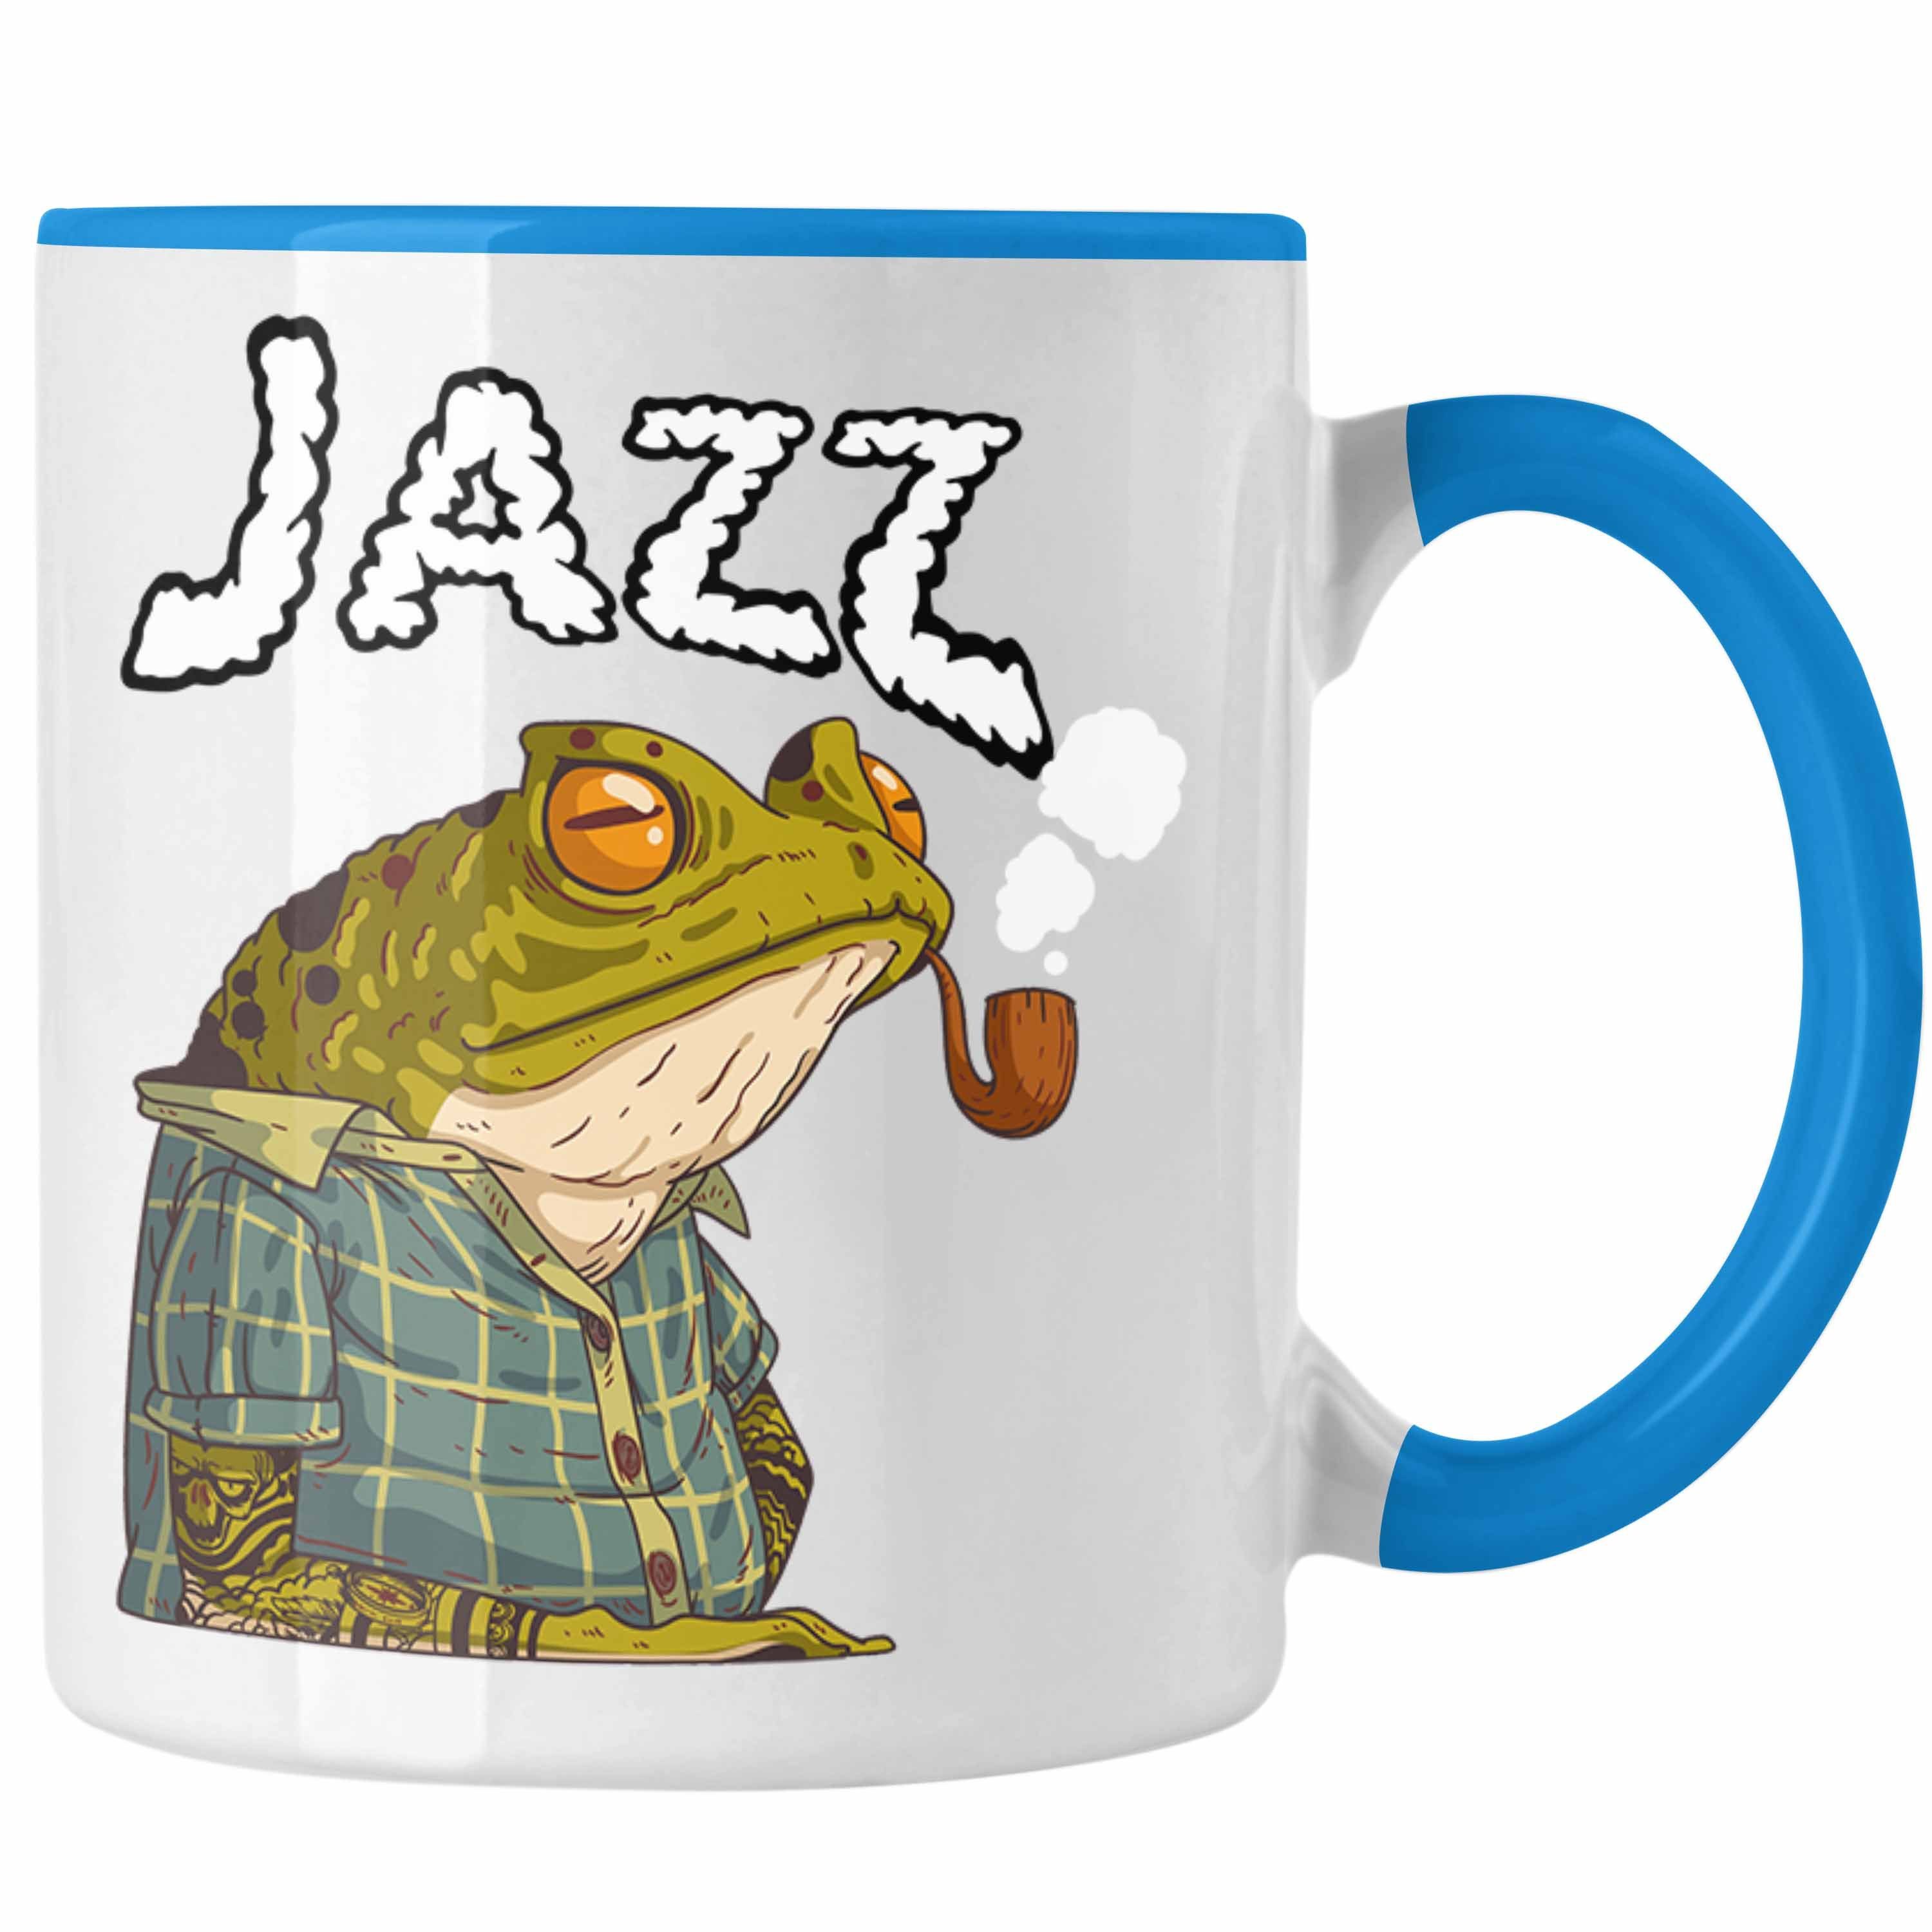 Jazz Lustig Tasse Trendation Geschenk Frosch Tasse Blau Grafik